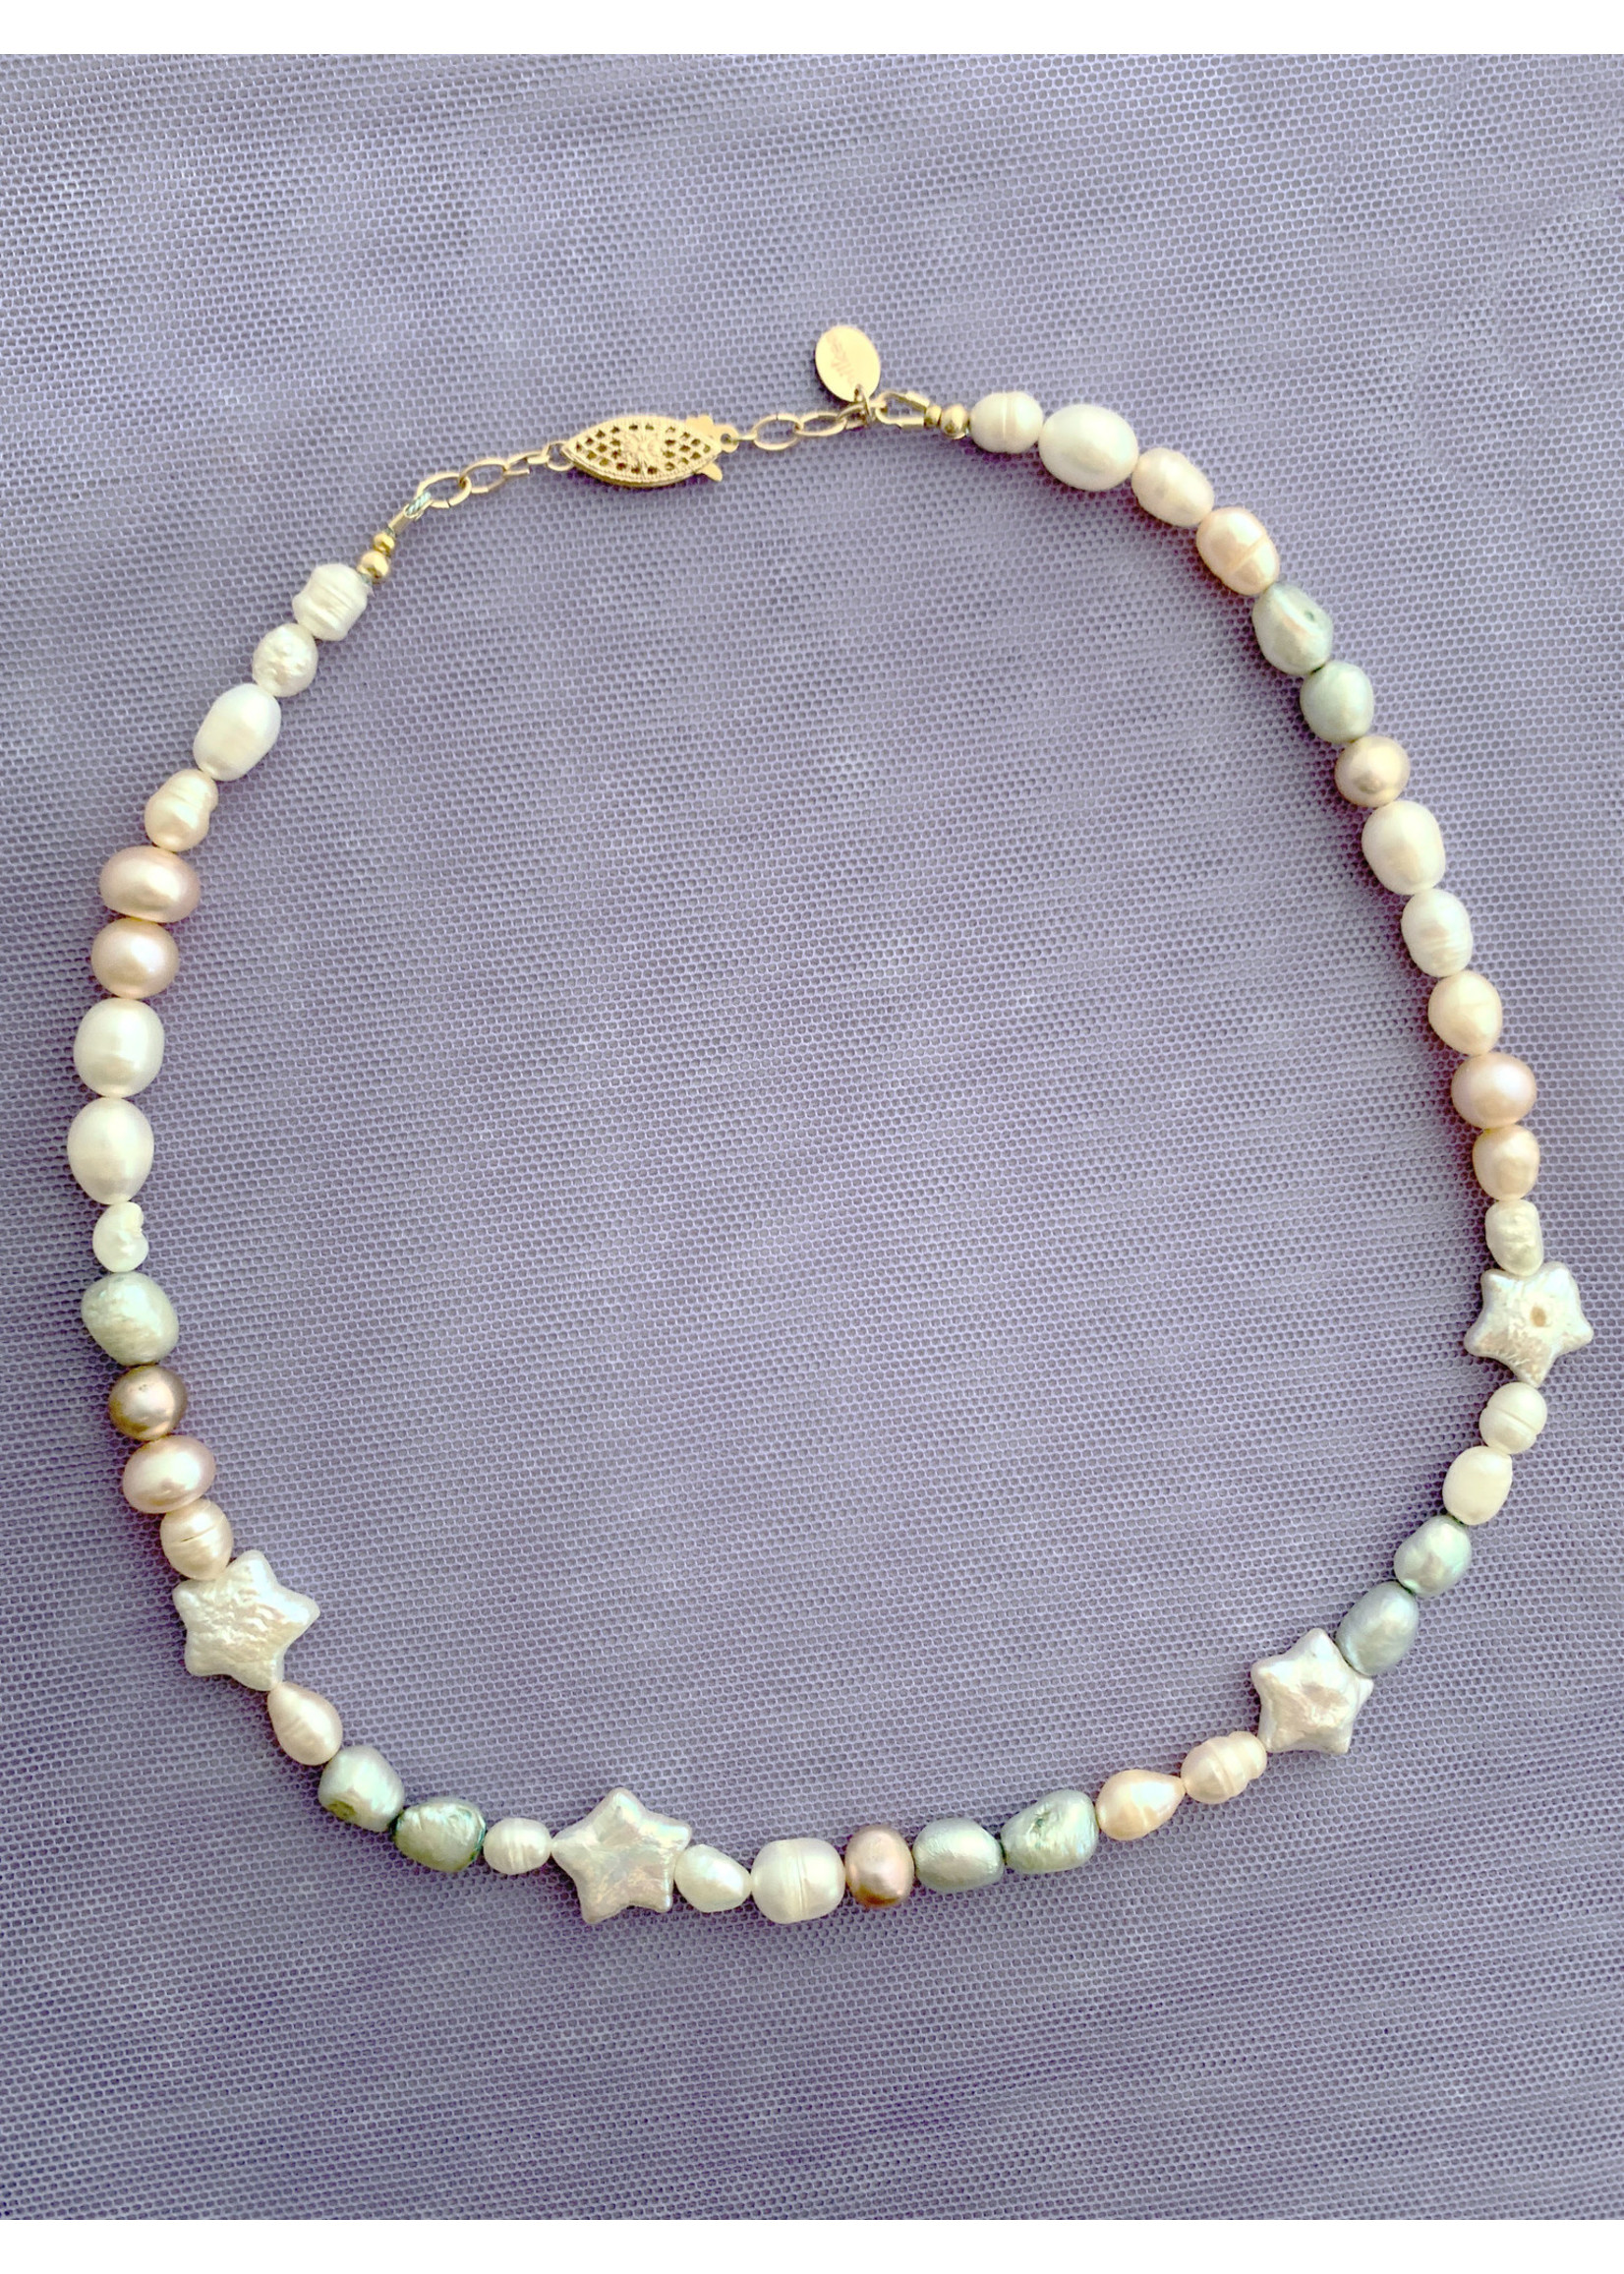 Miiken Handcrafted Collier de perles par Miiken Handcrafted